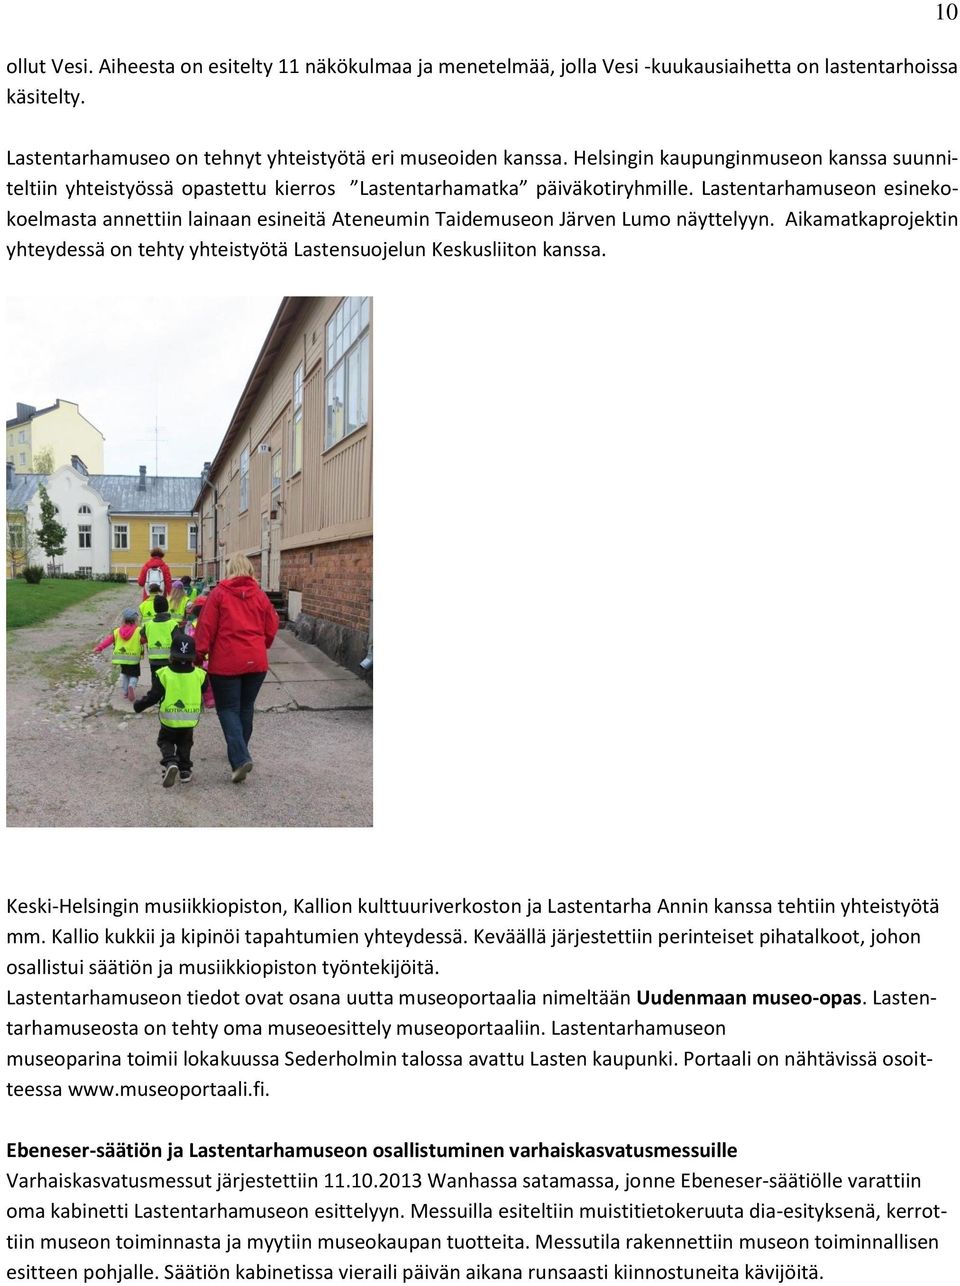 Lastentarhamuseon esinekokoelmasta annettiin lainaan esineitä Ateneumin Taidemuseon Järven Lumo näyttelyyn. Aikamatkaprojektin yhteydessä on tehty yhteistyötä Lastensuojelun Keskusliiton kanssa.